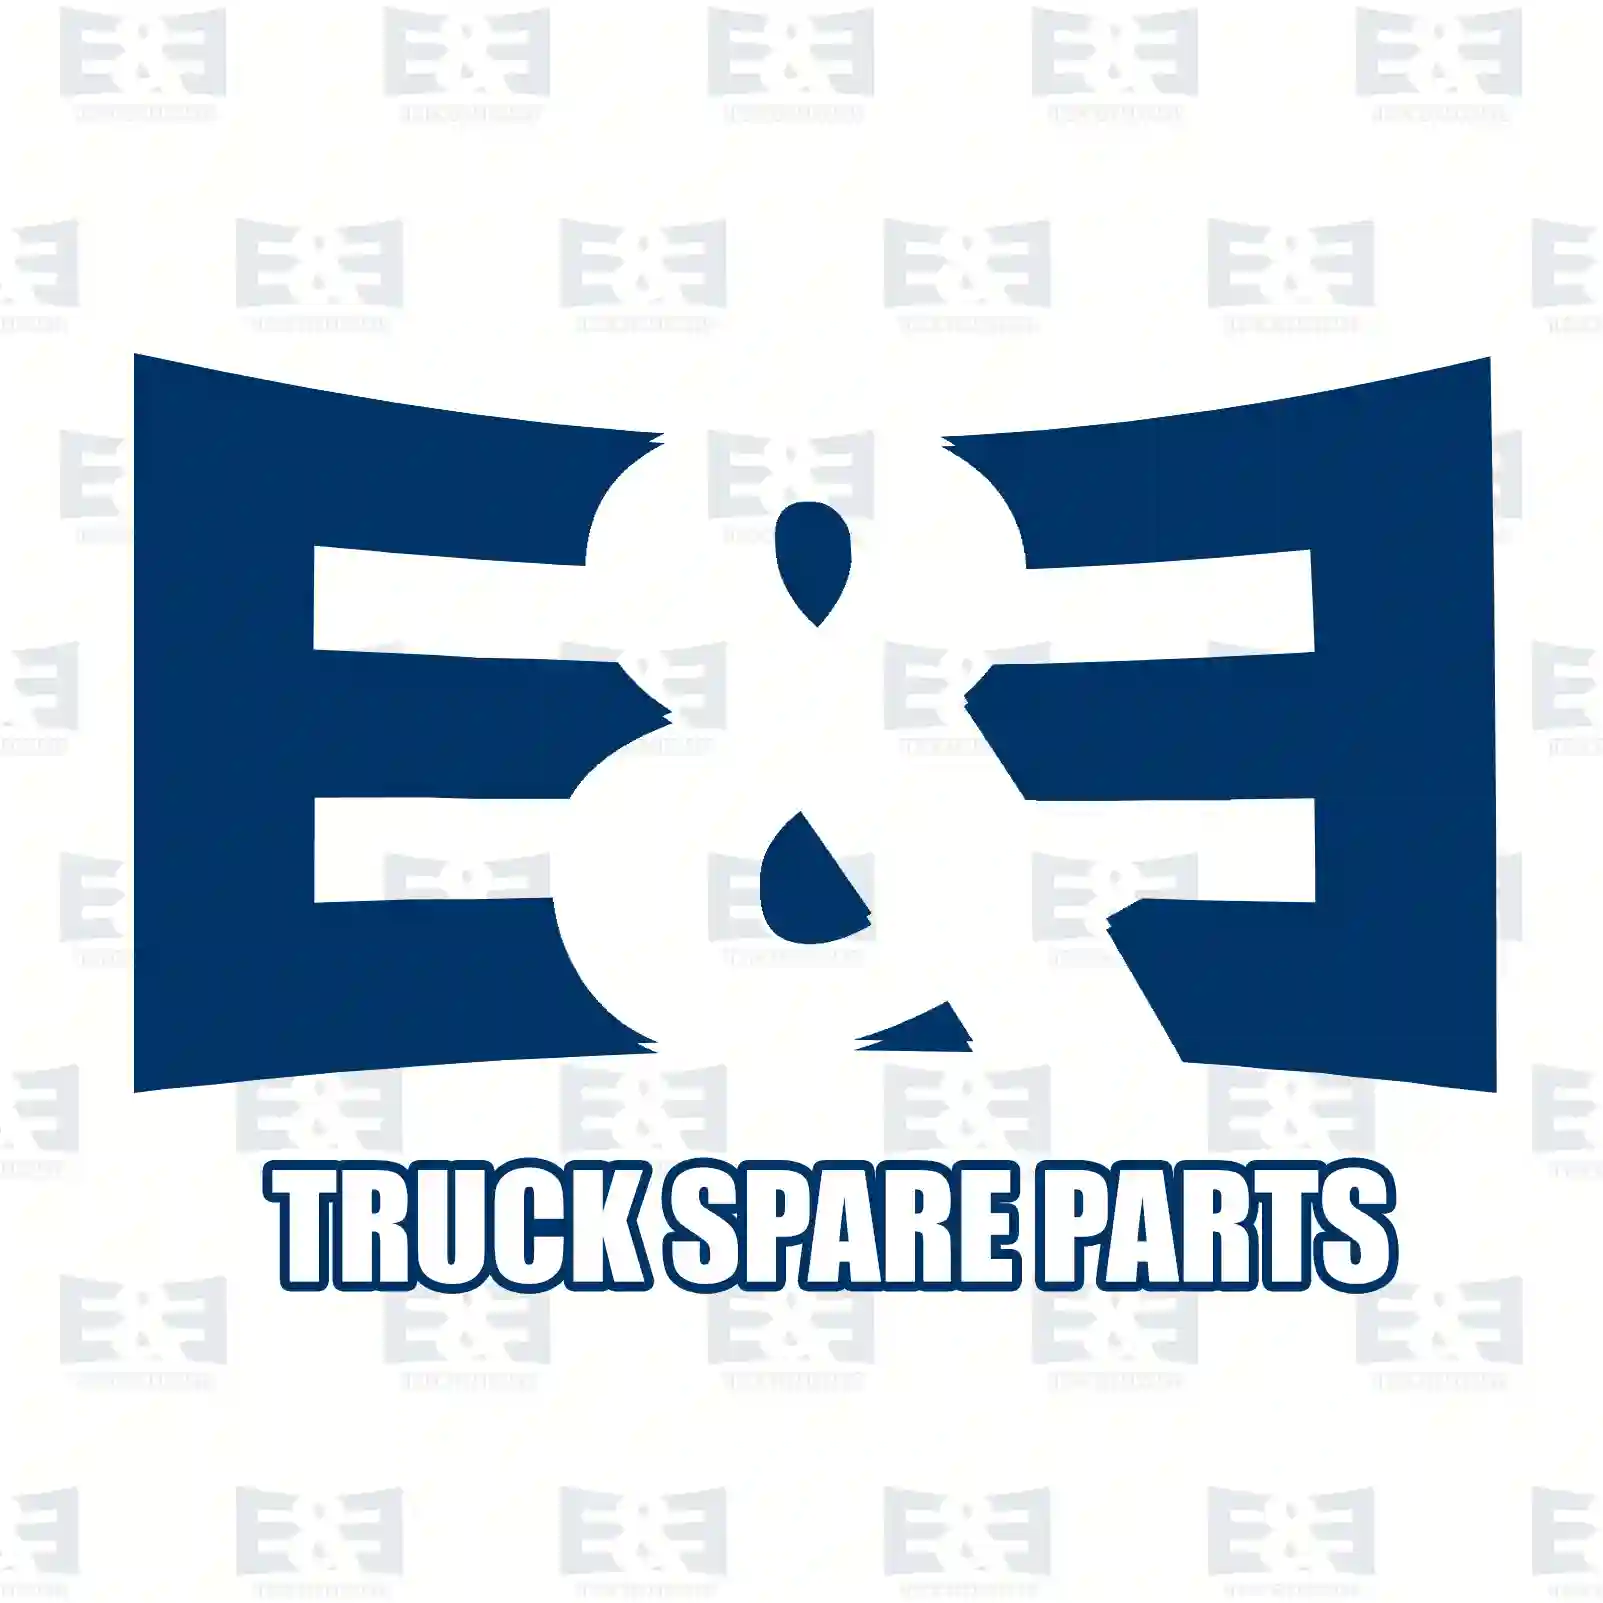 Toggle switch, 2E2290540, 36255056012, N1011065528 ||  2E2290540 E&E Truck Spare Parts | Truck Spare Parts, Auotomotive Spare Parts Toggle switch, 2E2290540, 36255056012, N1011065528 ||  2E2290540 E&E Truck Spare Parts | Truck Spare Parts, Auotomotive Spare Parts